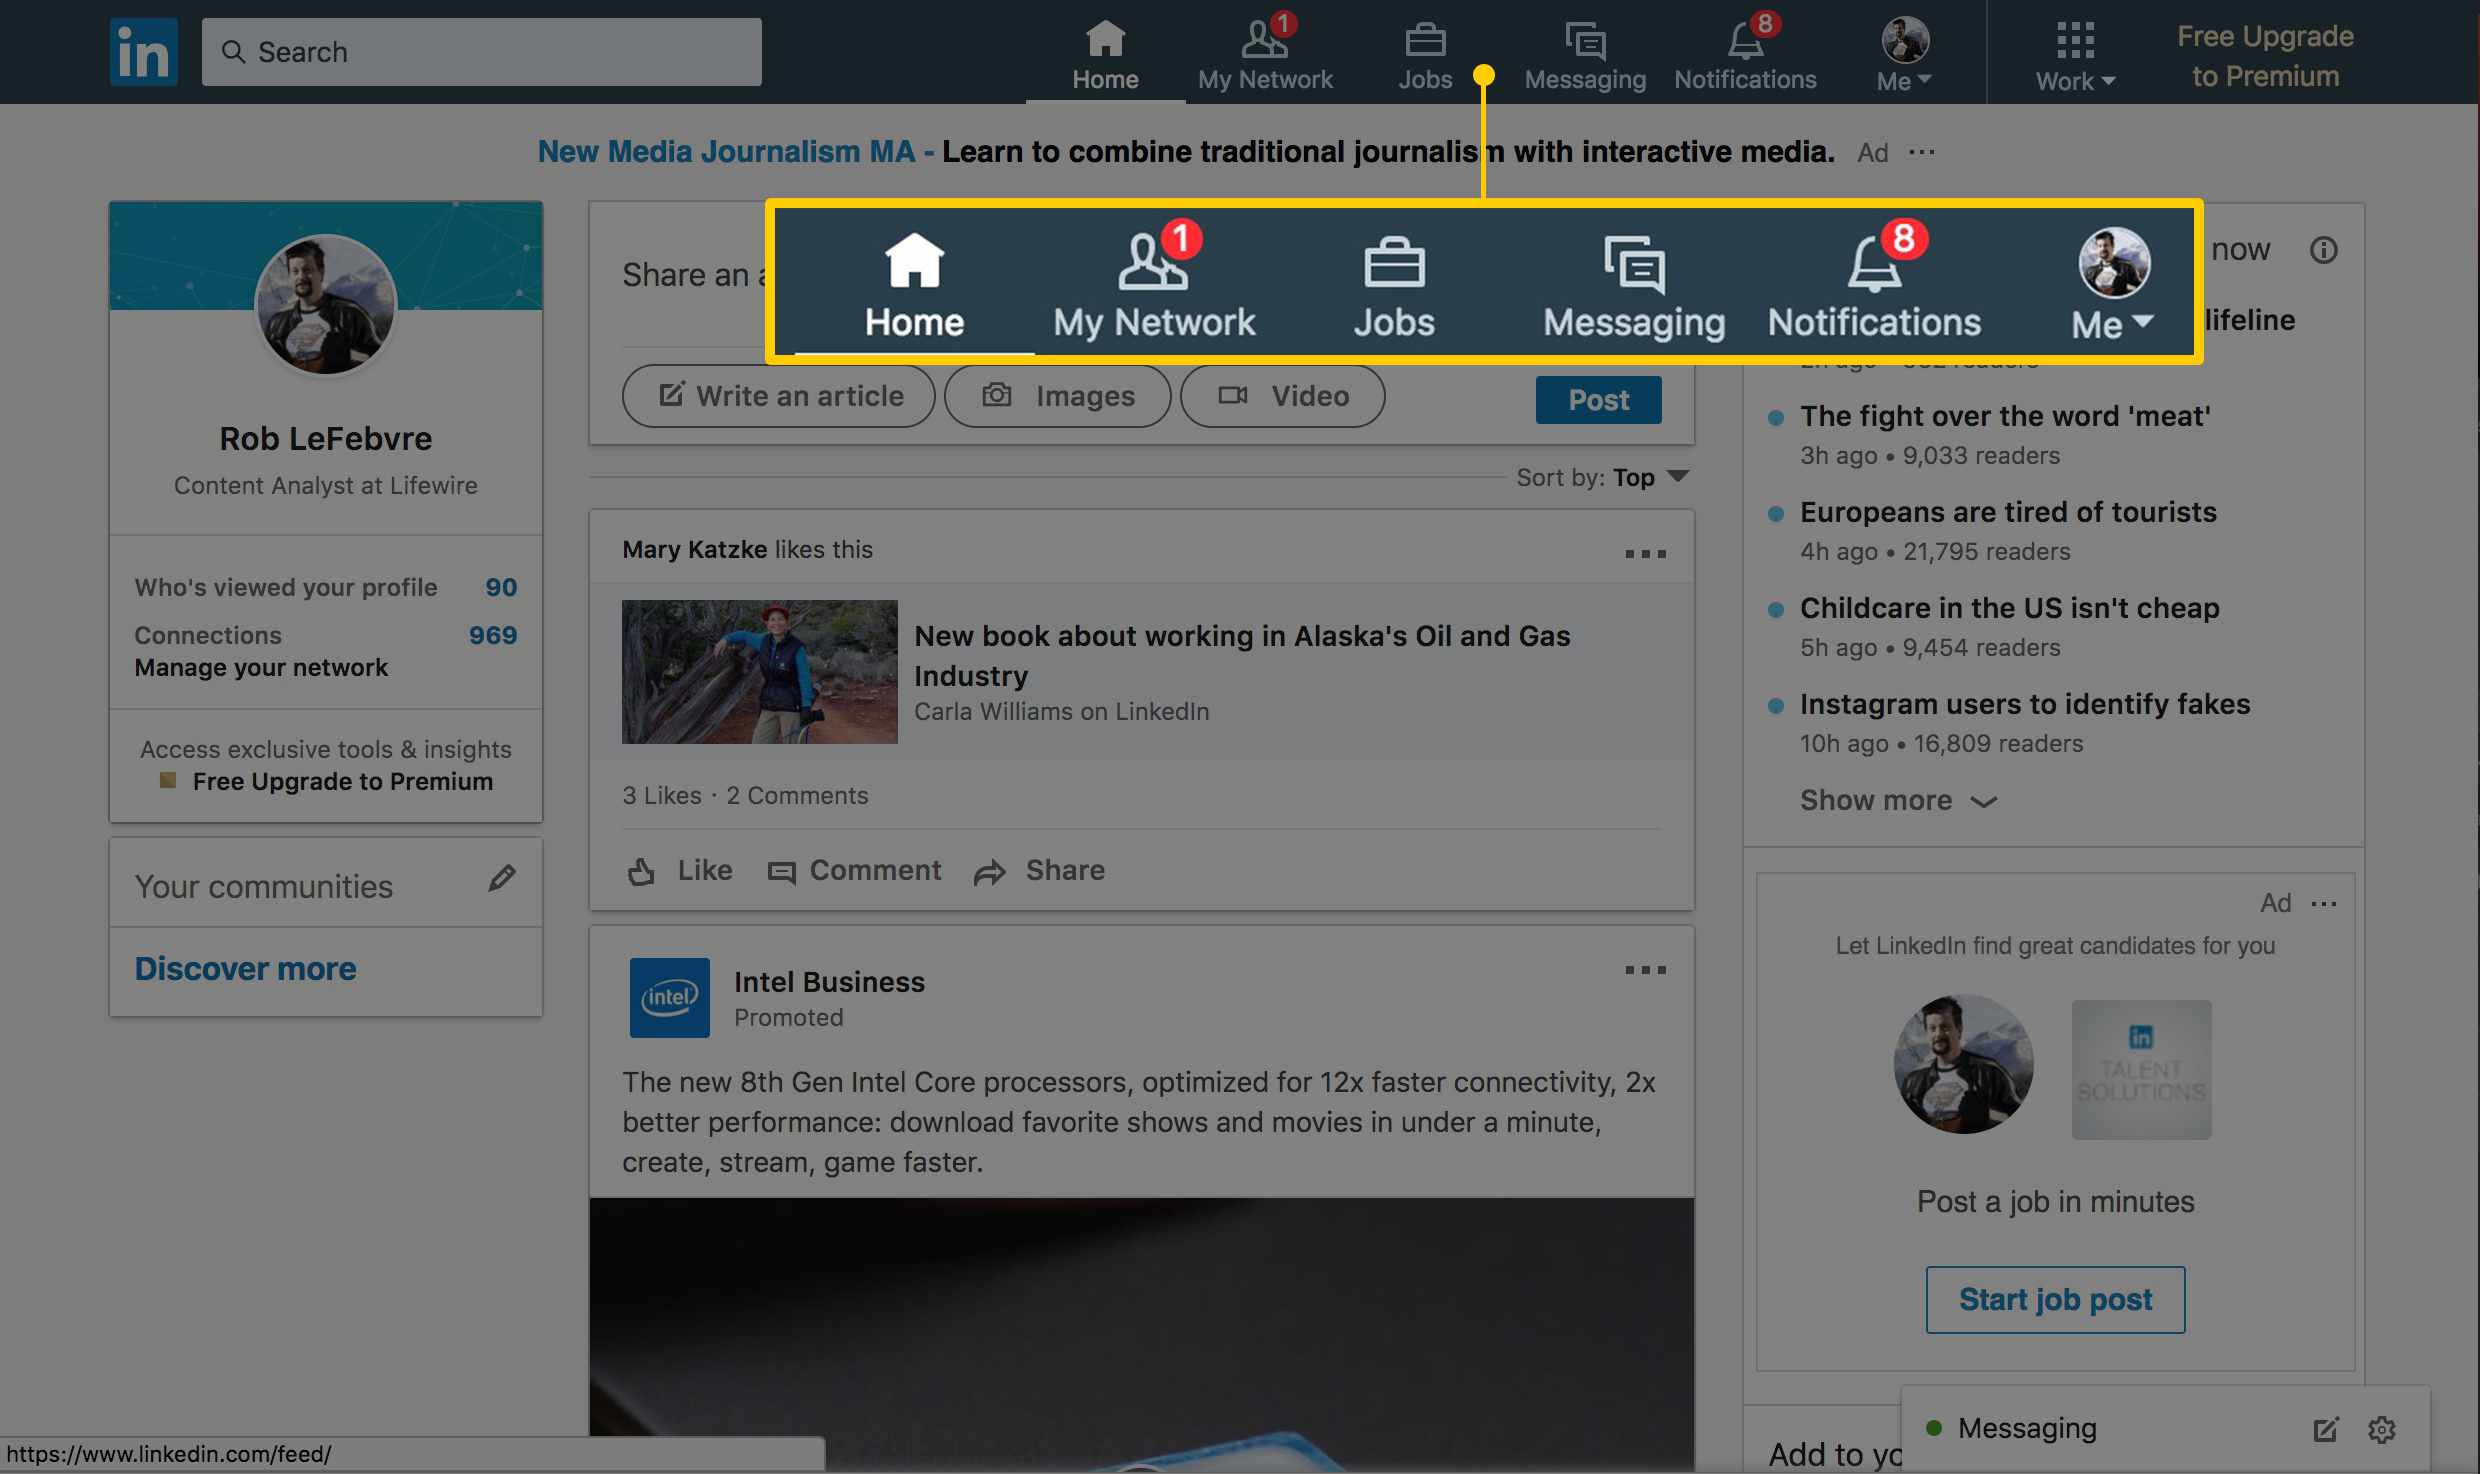 Captura de tela da página principal do Linkedin com foco na barra de navegação: Home, My Network, Jobs, Messaging, Notifications, Me